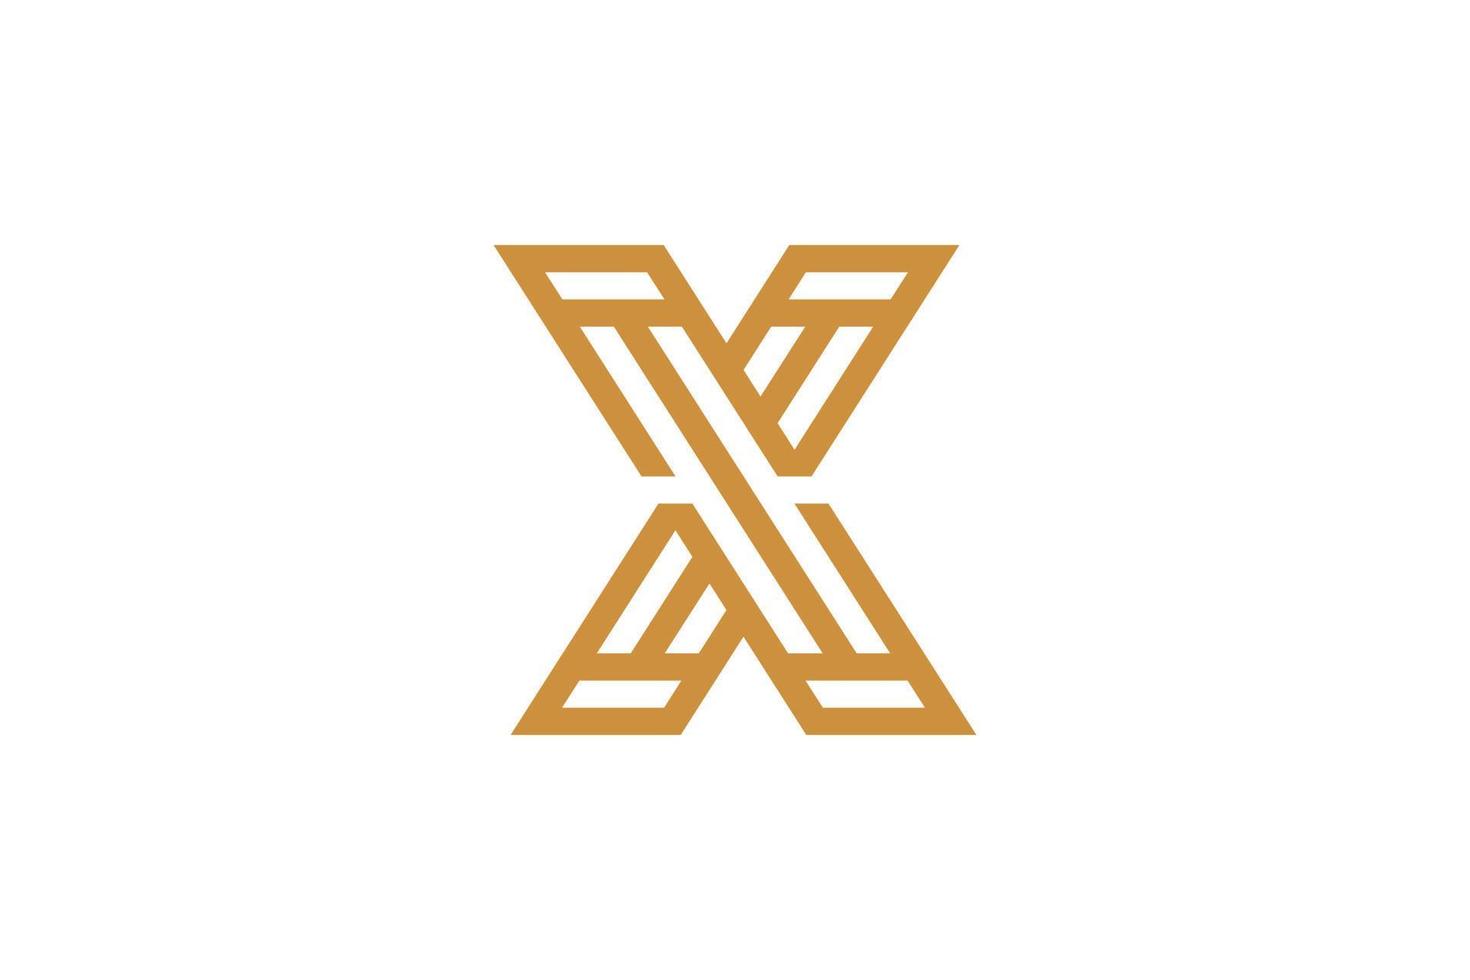 logotipo simple de la letra x monoline vector